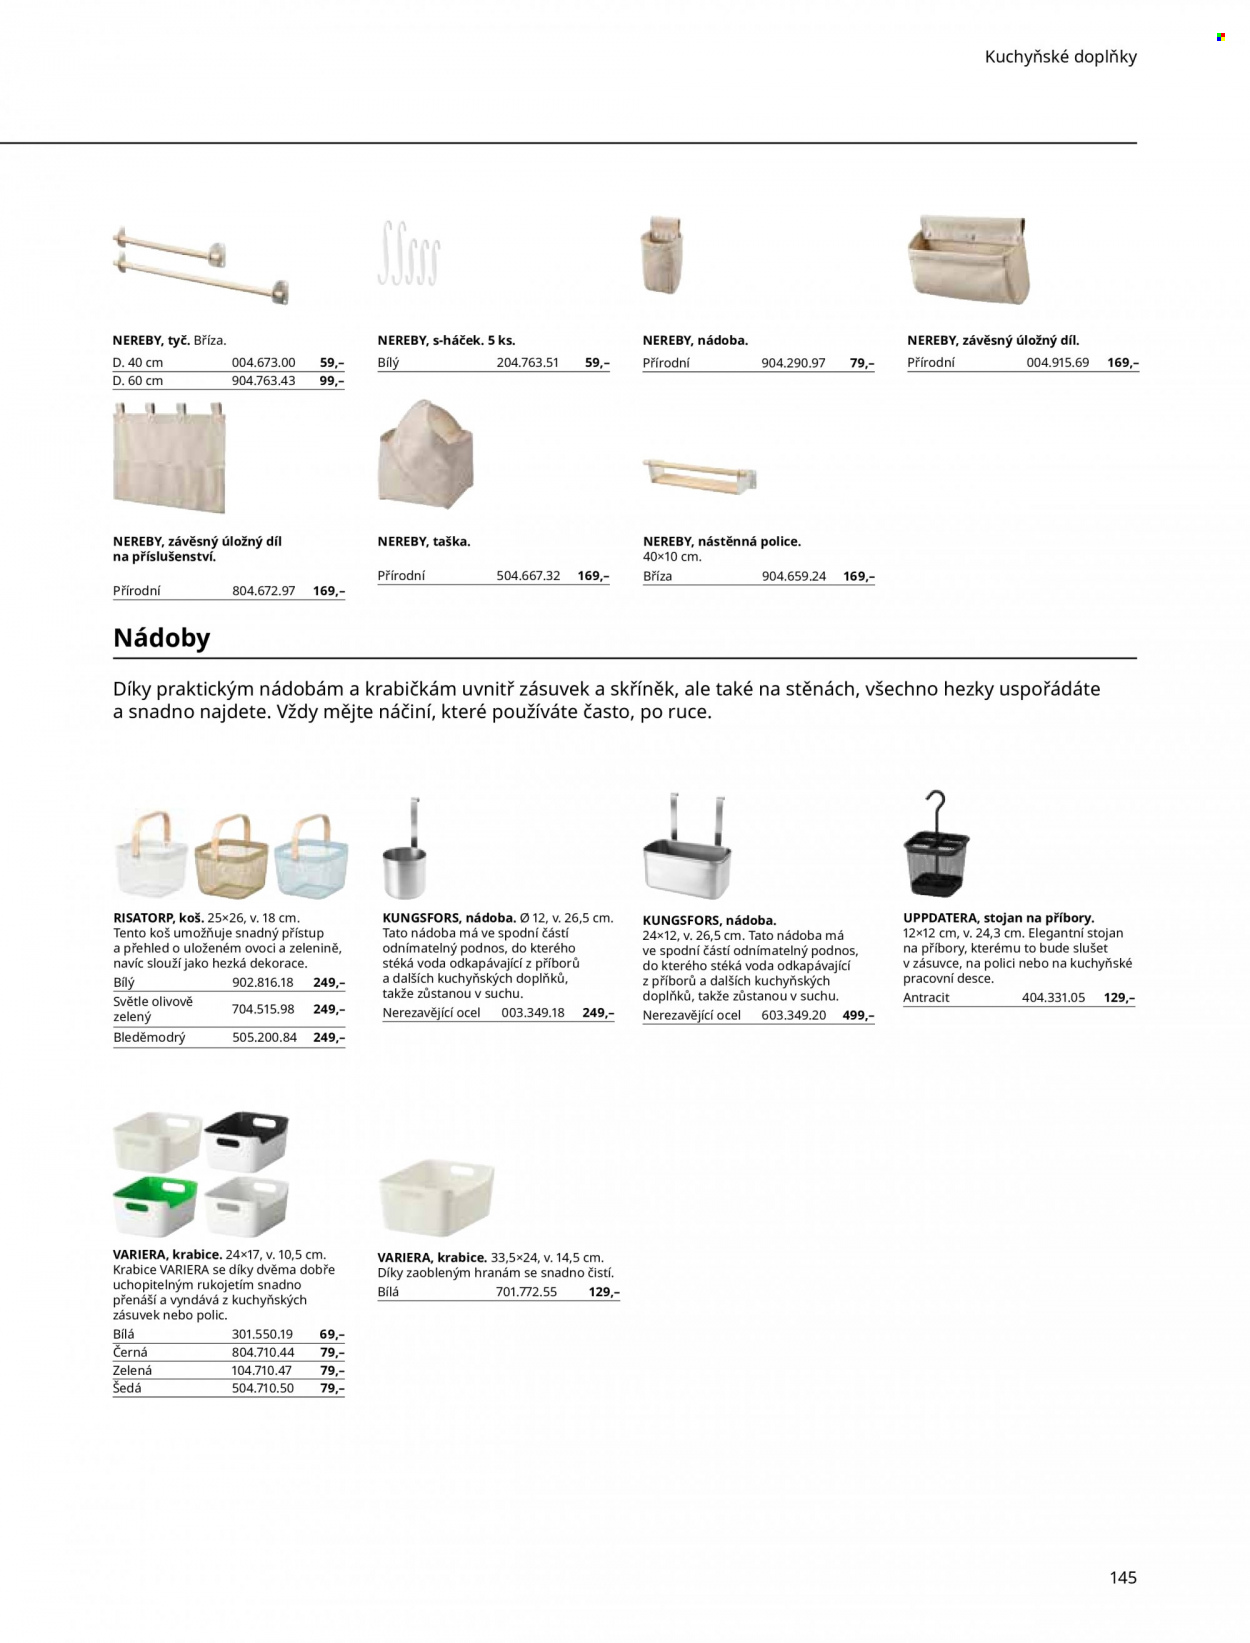 Leták IKEA - Produkty v akci - podnos, kuchyňské doplňky, stojan na příbory, koš, police, úložný box, nástěnná police, dekorace, háček, taška. Strana 145.